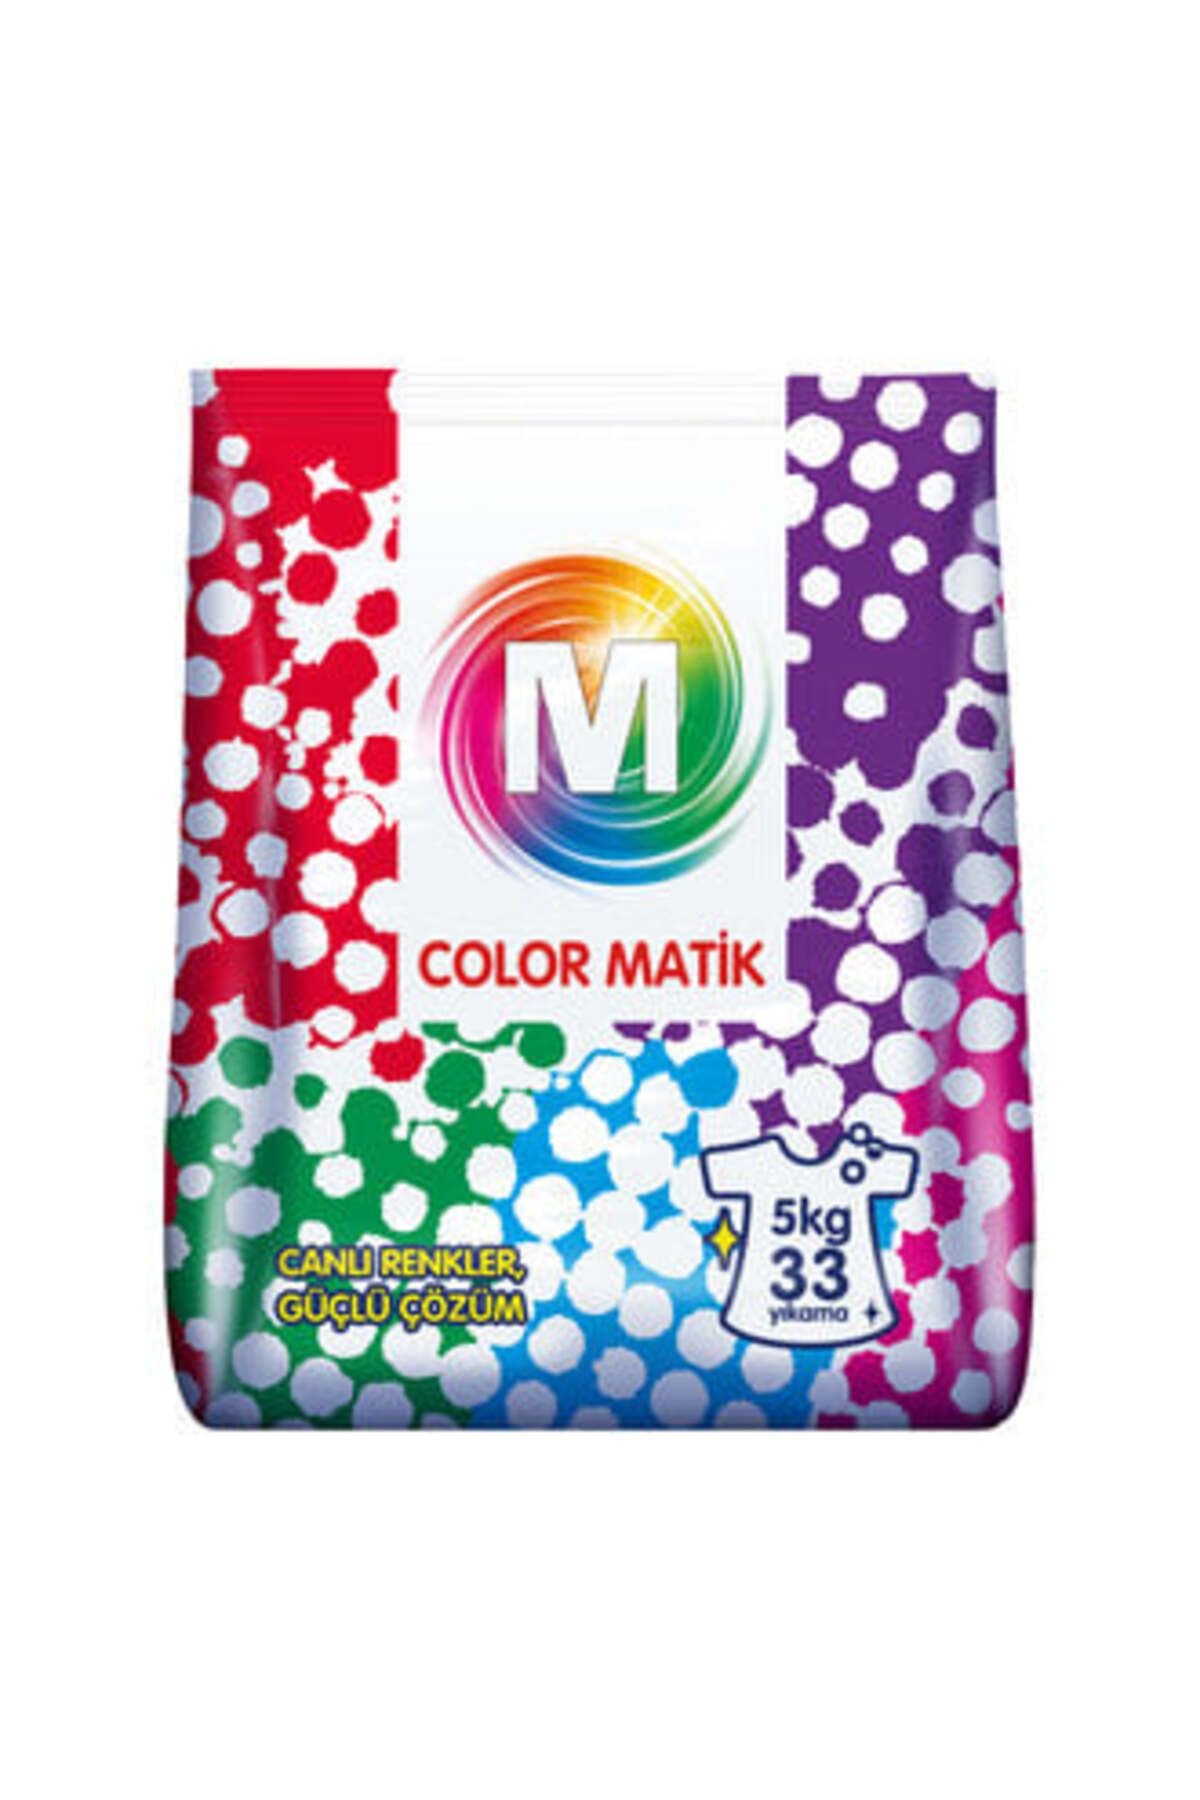 Migros Color Matik 5 Kg 33 Yıkama ( 2 ADET )